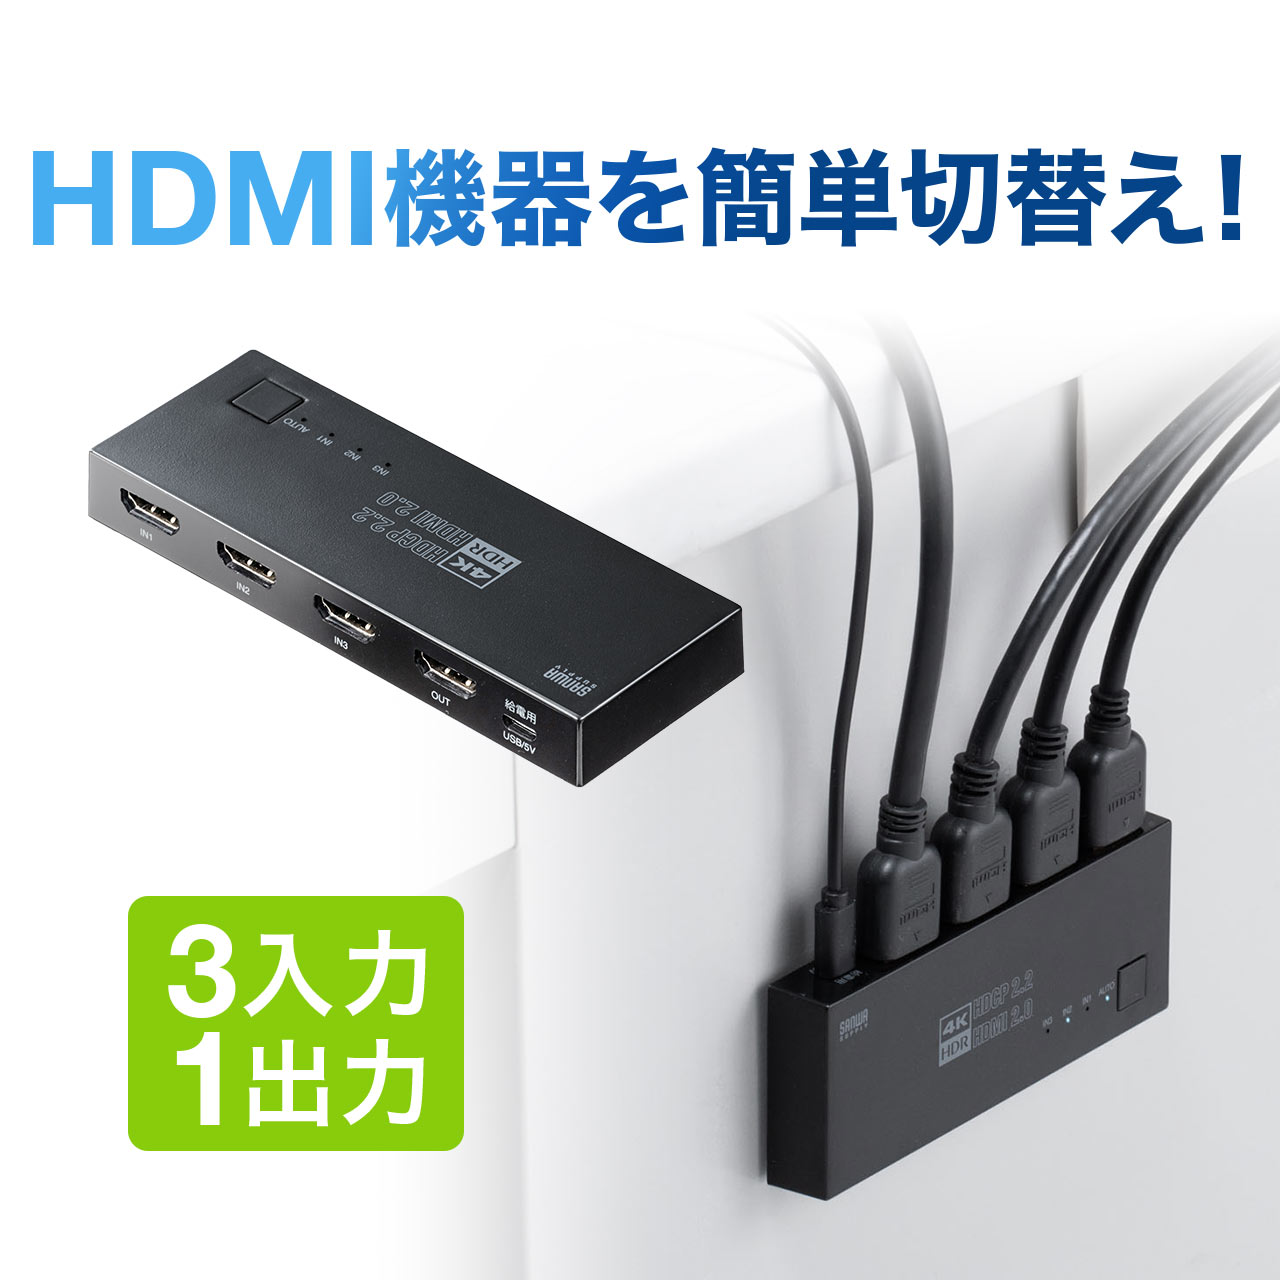 400-SW035 サンワダイレクト限定品 お洒落 送料無料 HDMI 切替器 4K 60Hz HDR パソコン セレクター 3入力1出力 手動切り替え 大好評です マグネットシート付 自動 HDCP2.2